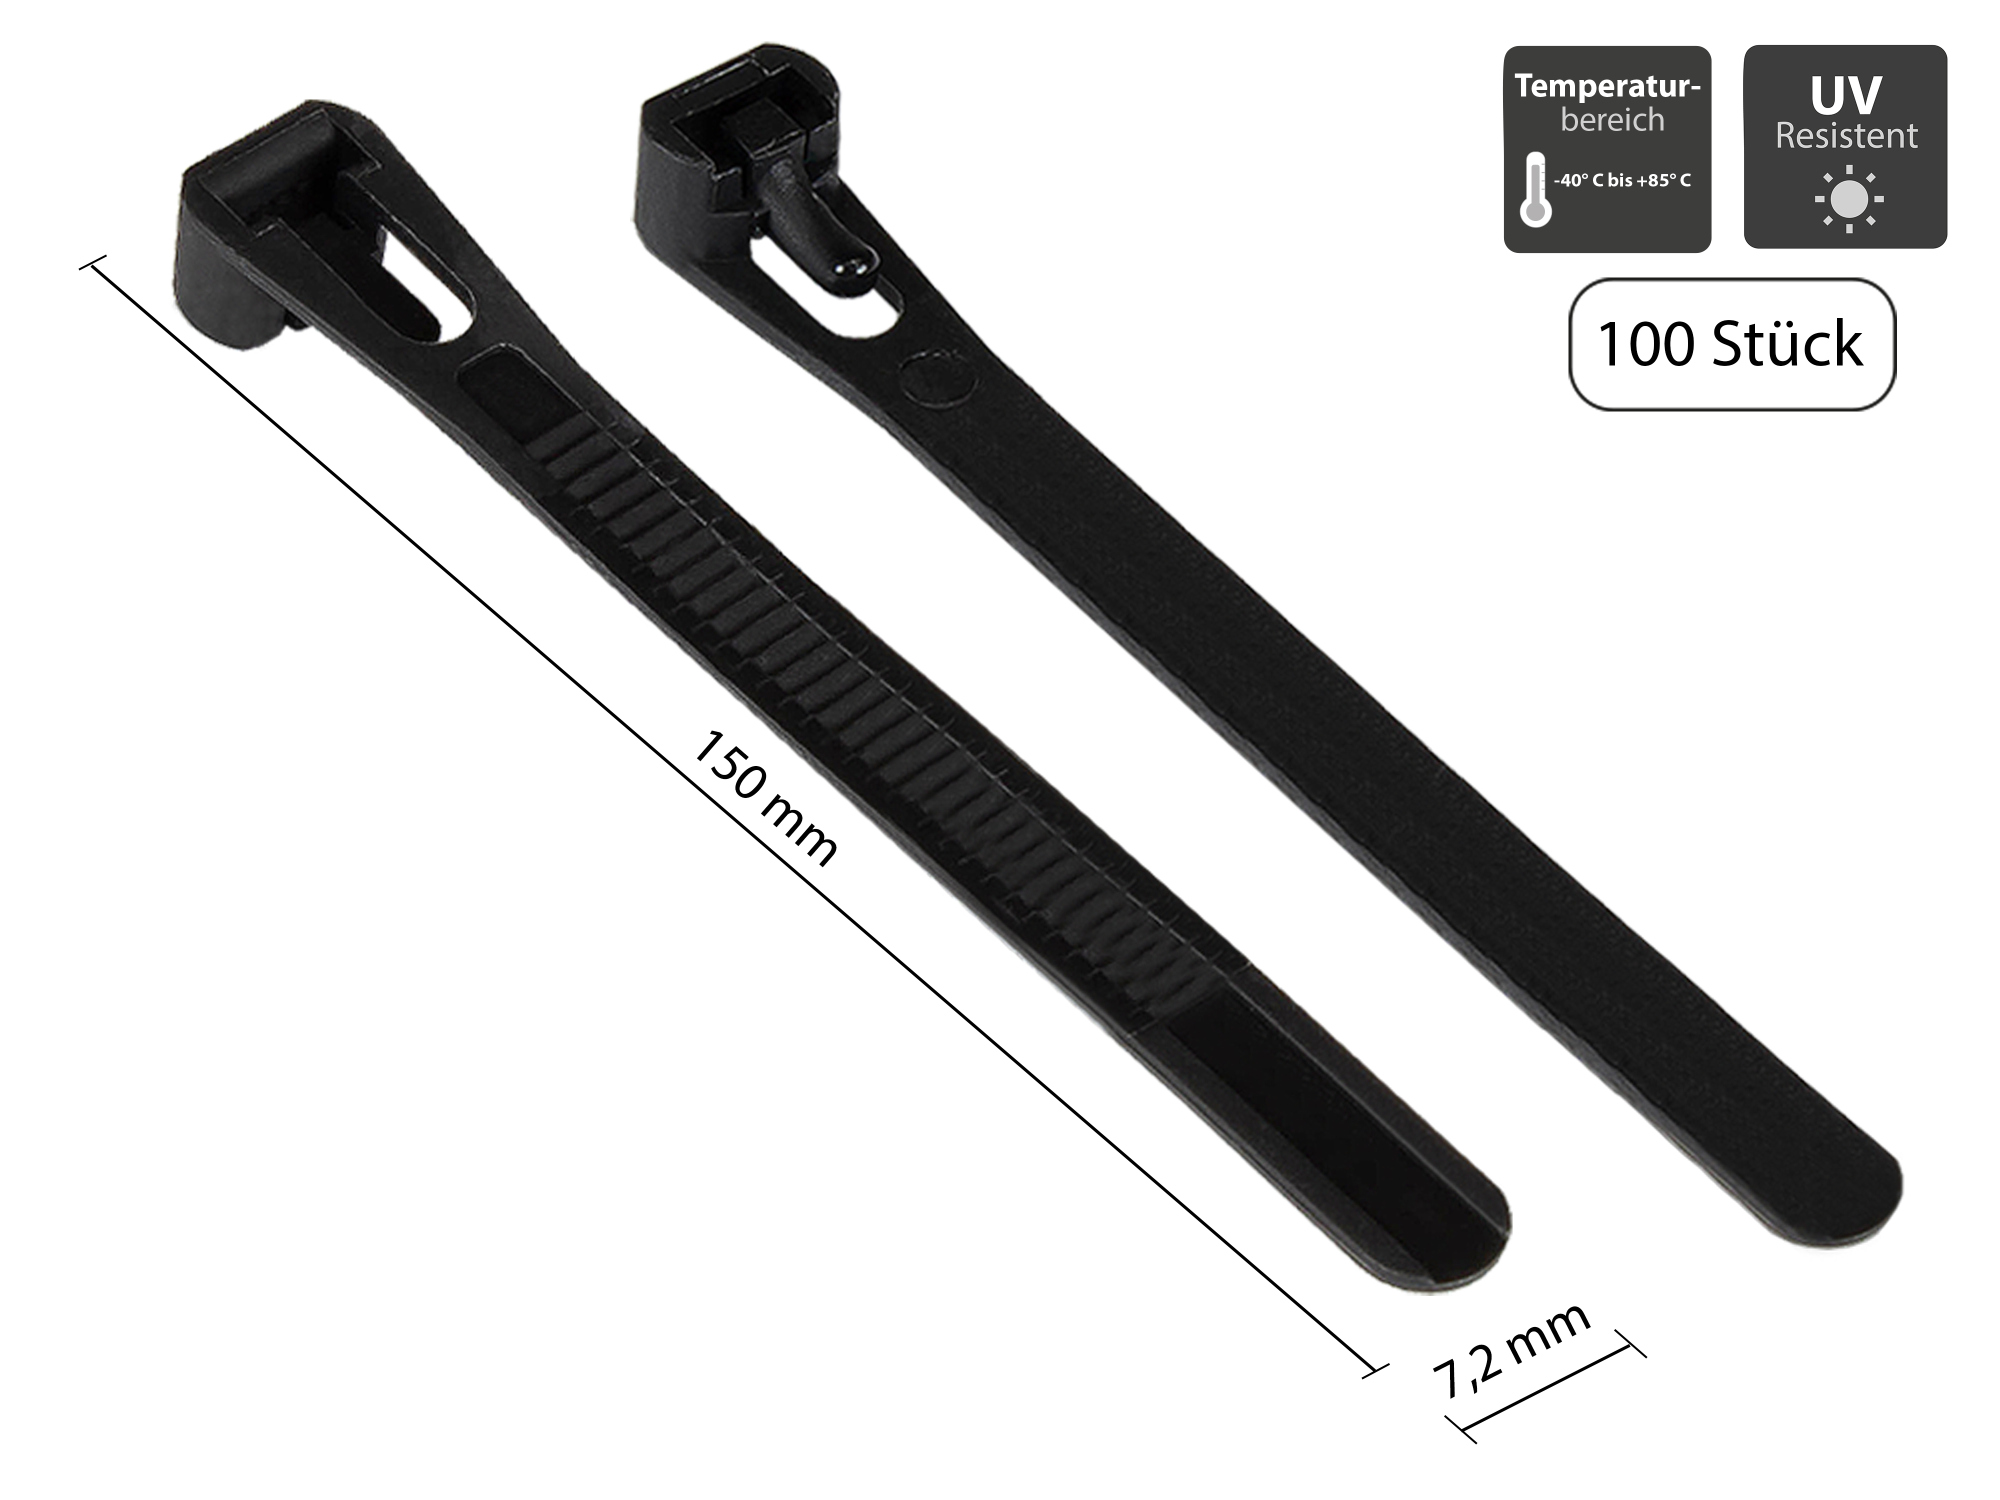 Wiederverwendbarer Kabelbinder 150 mm x 7,2 mm, schwarz, UV-resistent, -40 °C bis +85 °C, 100 Stück